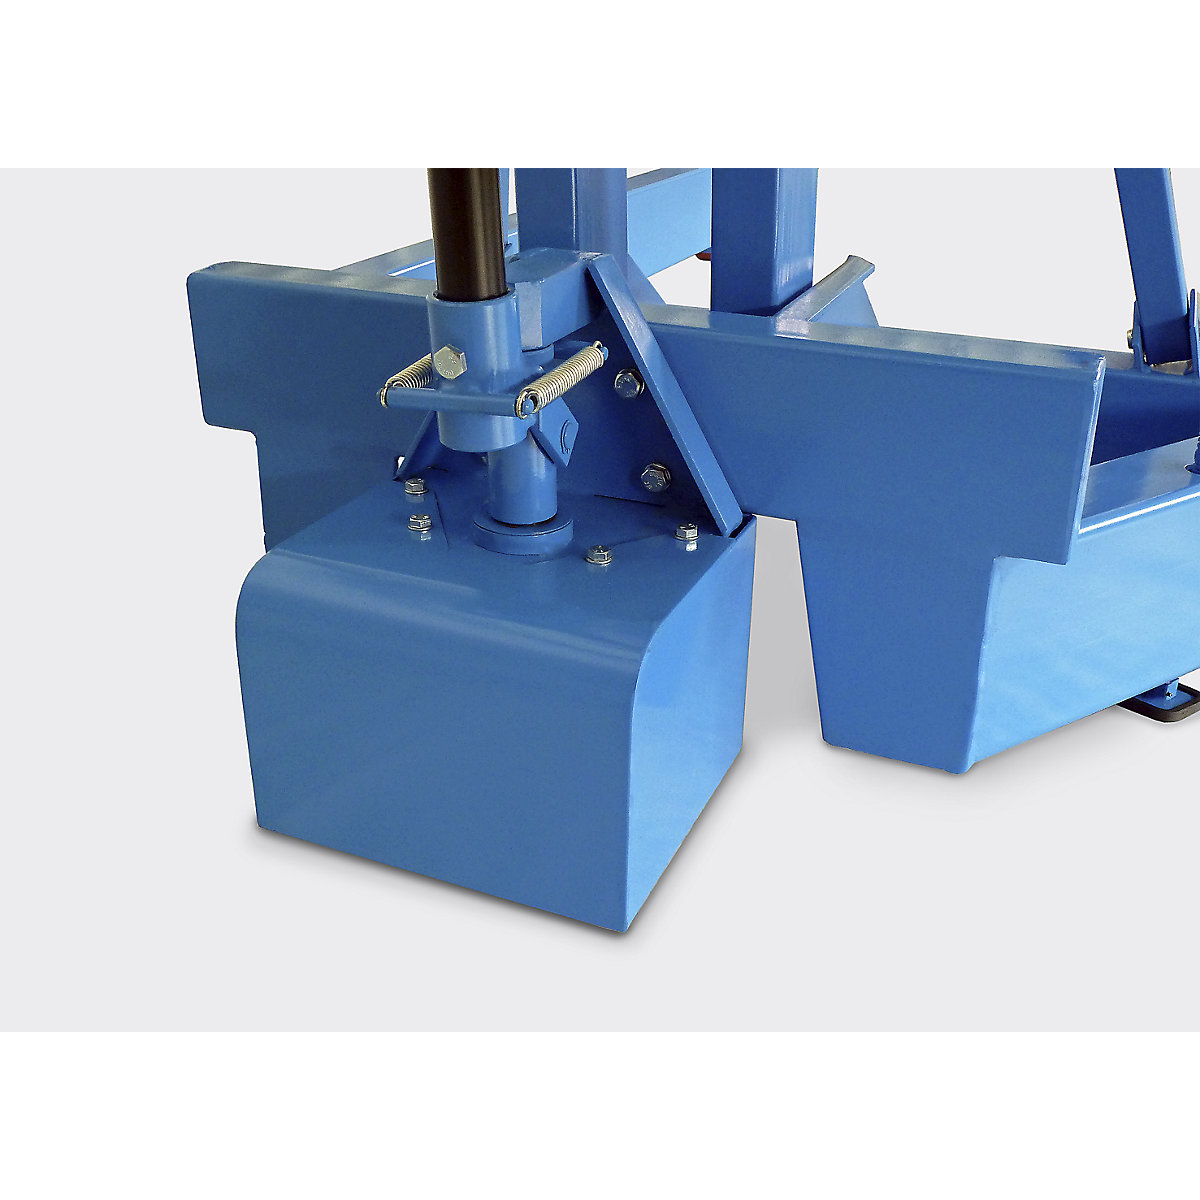 Grúa de taller BLUE: carga máx. 1500 kg, bastidor rodante paralelo